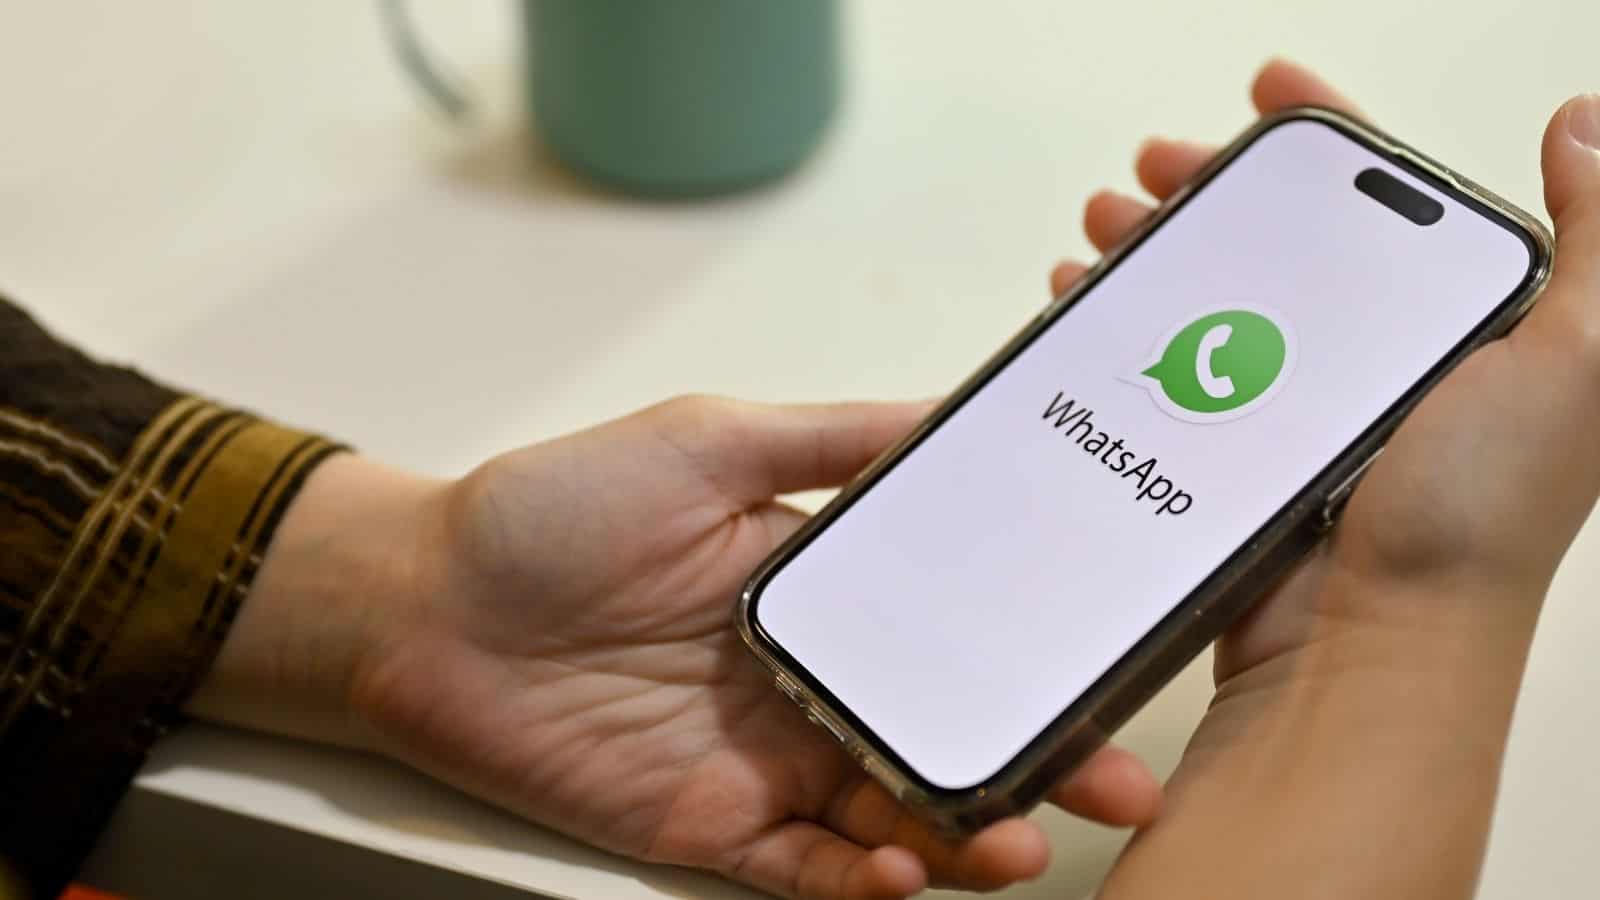  WhatsApp: il trucco per nascondere 